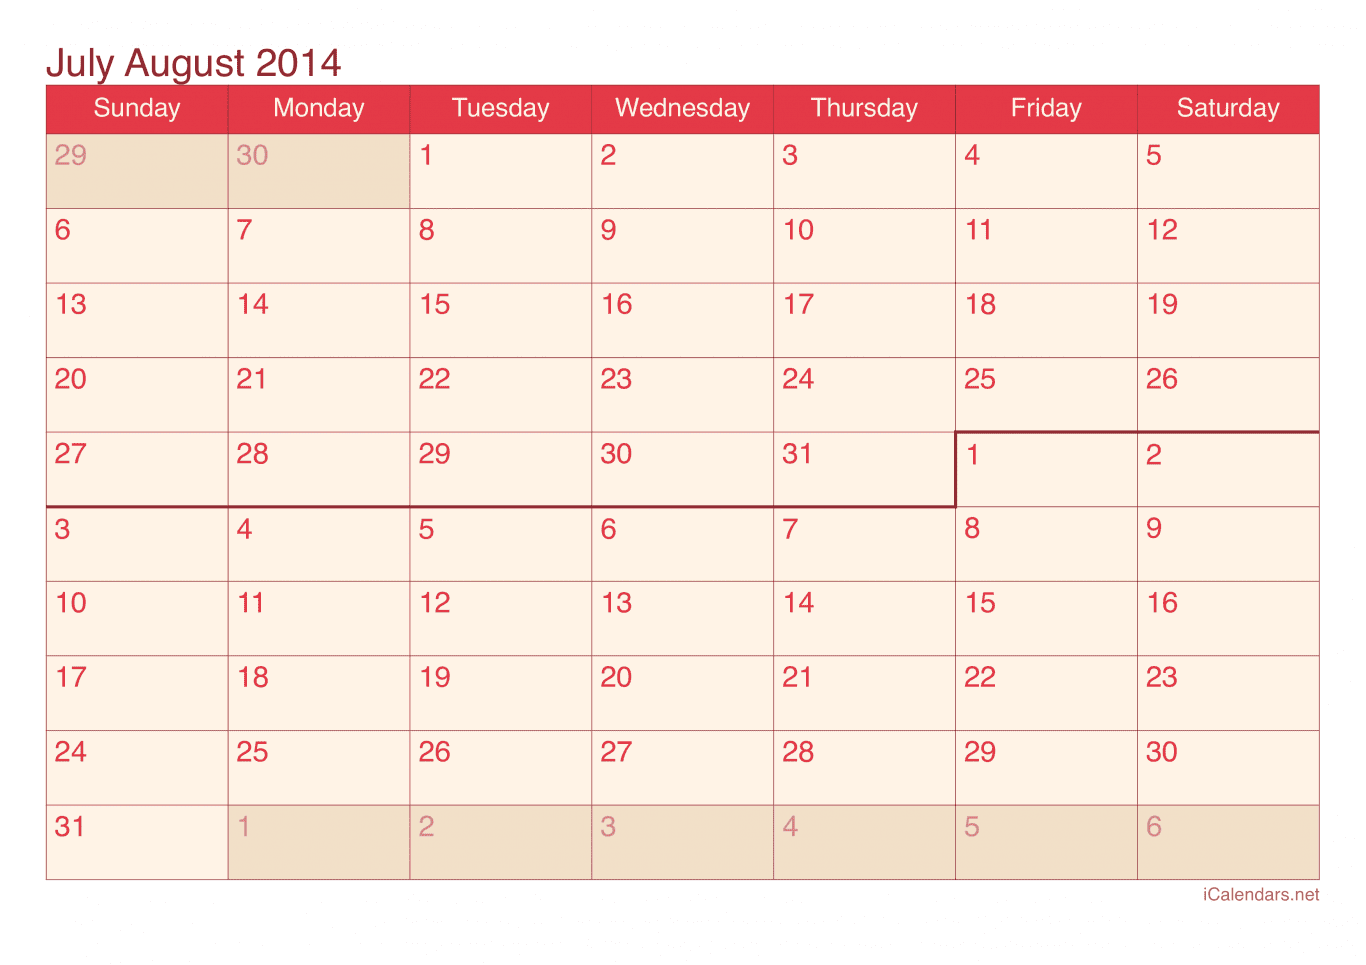 2014 July August Calendar - Cherry